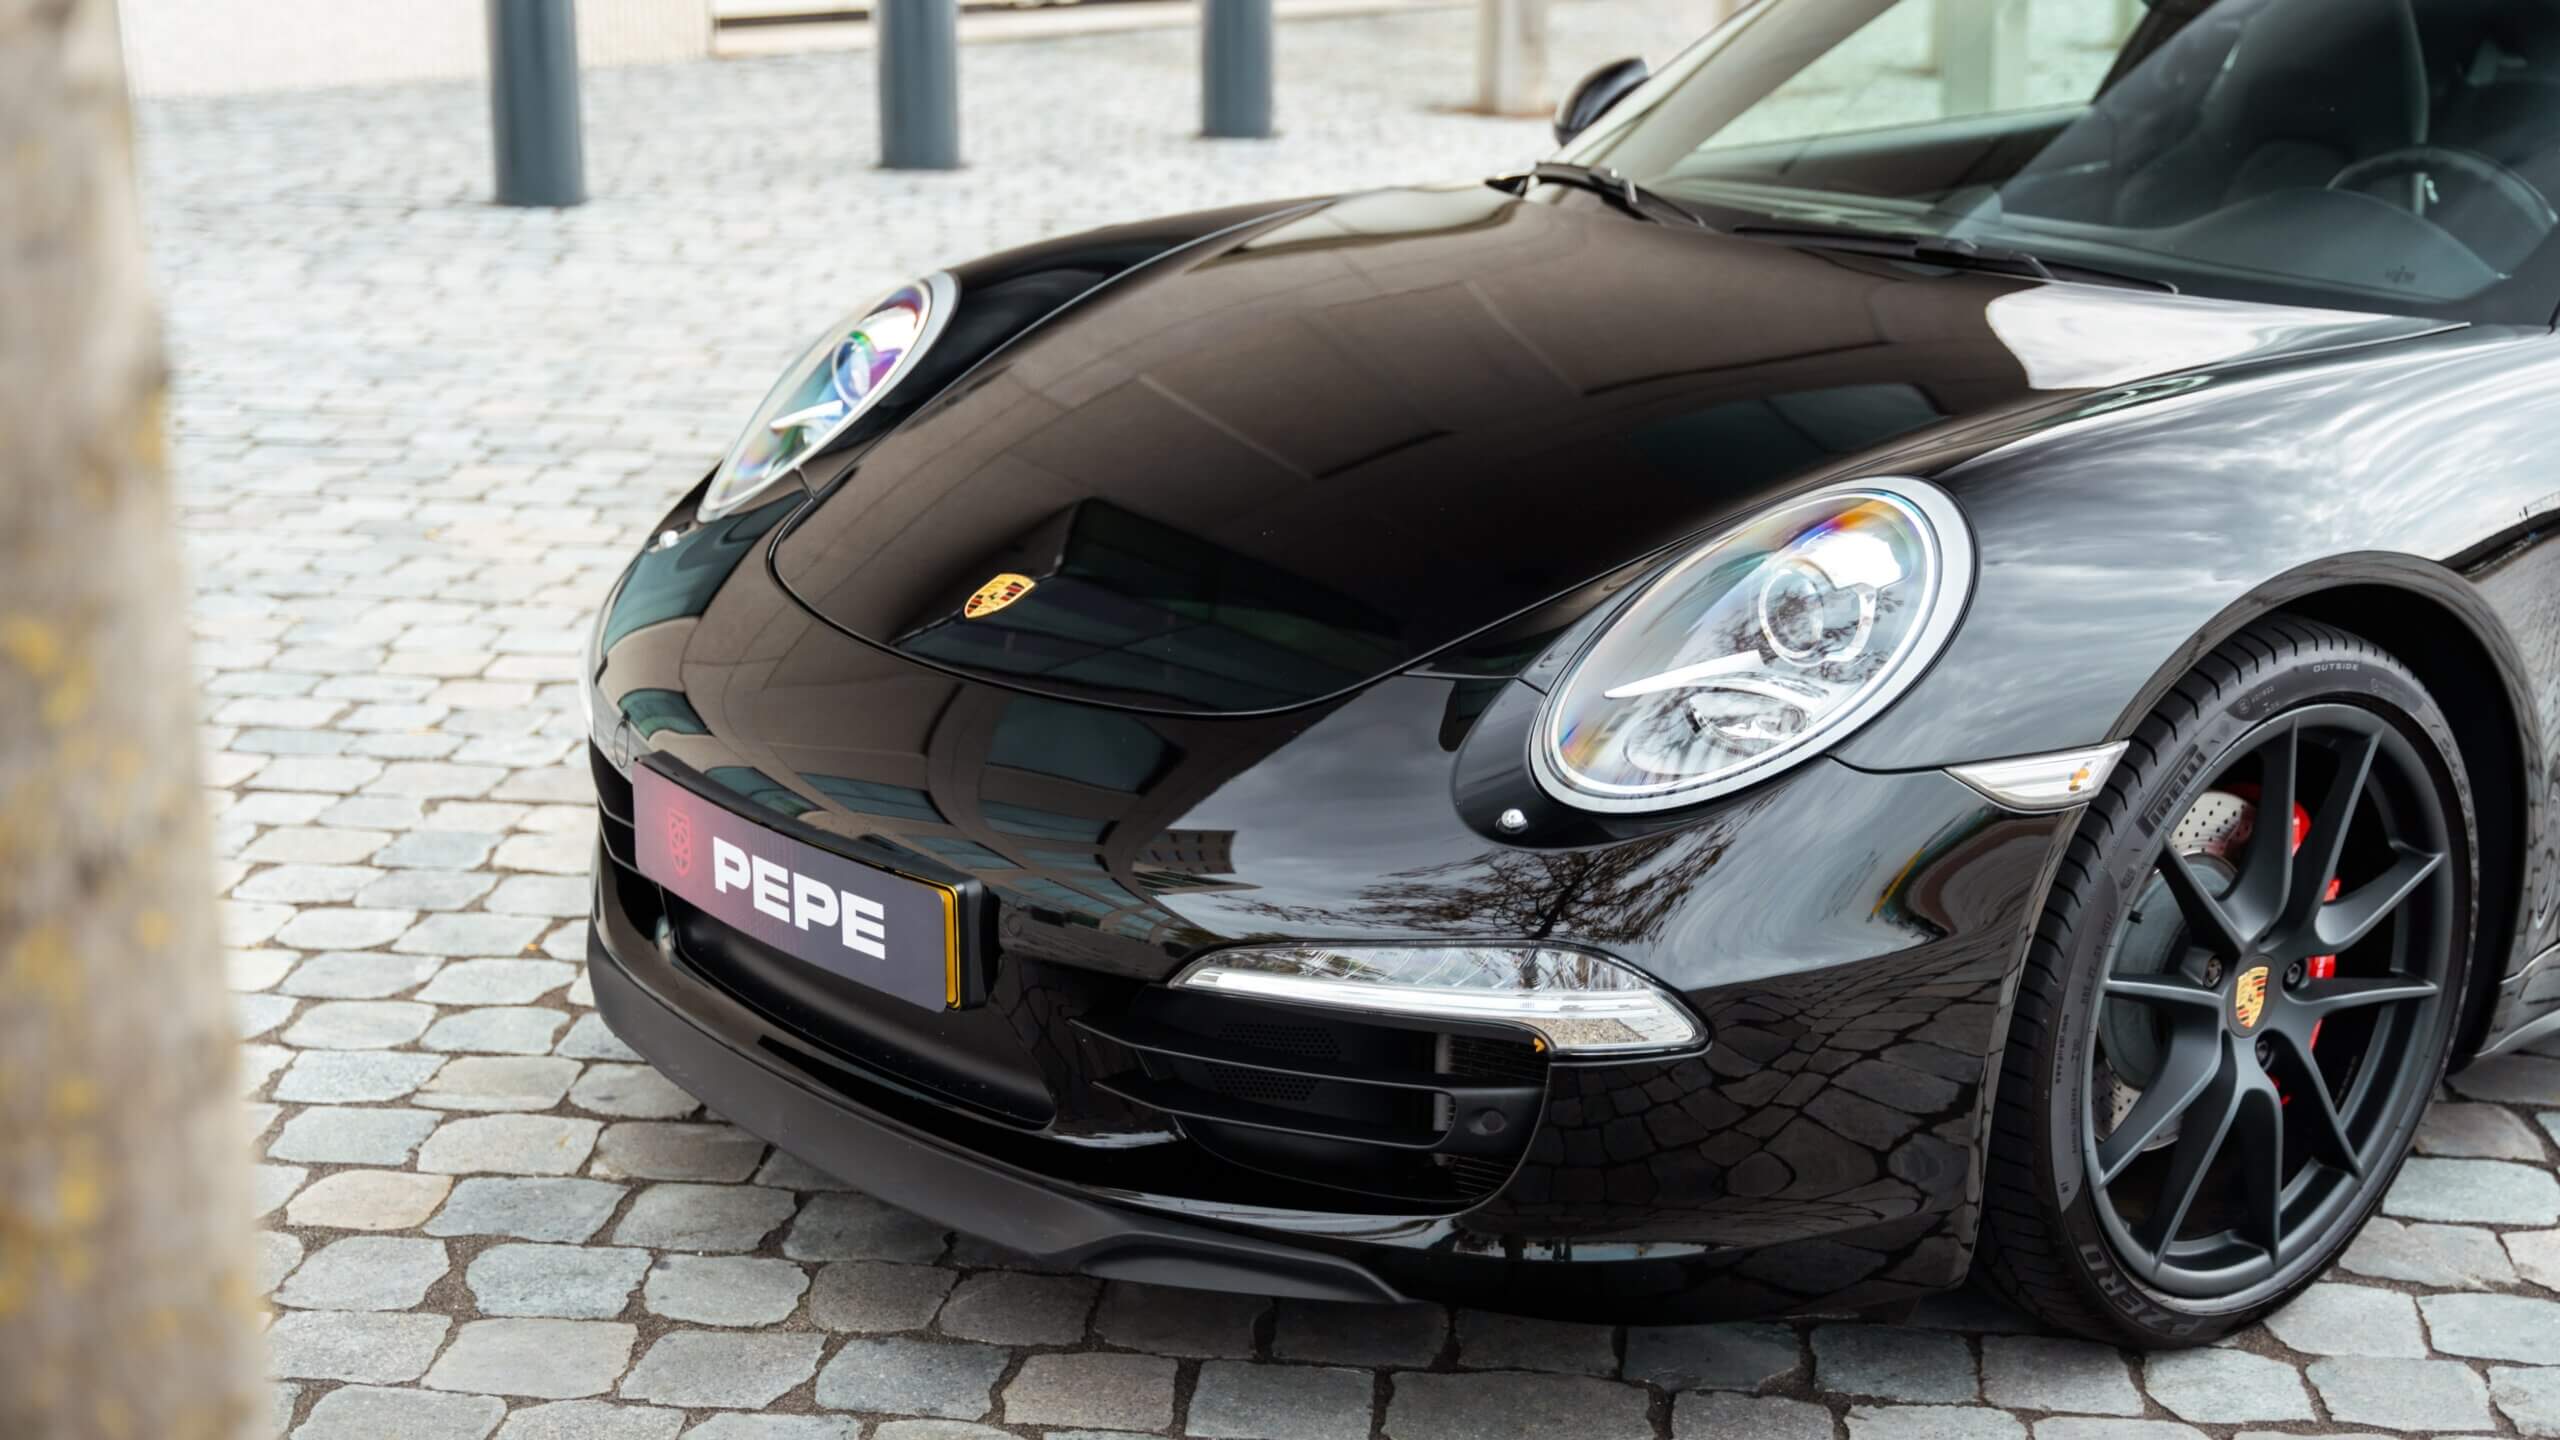 Luxe Porsche bedrijfswagens met uitstekende service voor zakelijke mobiliteitsoplossingen in Roosendaal